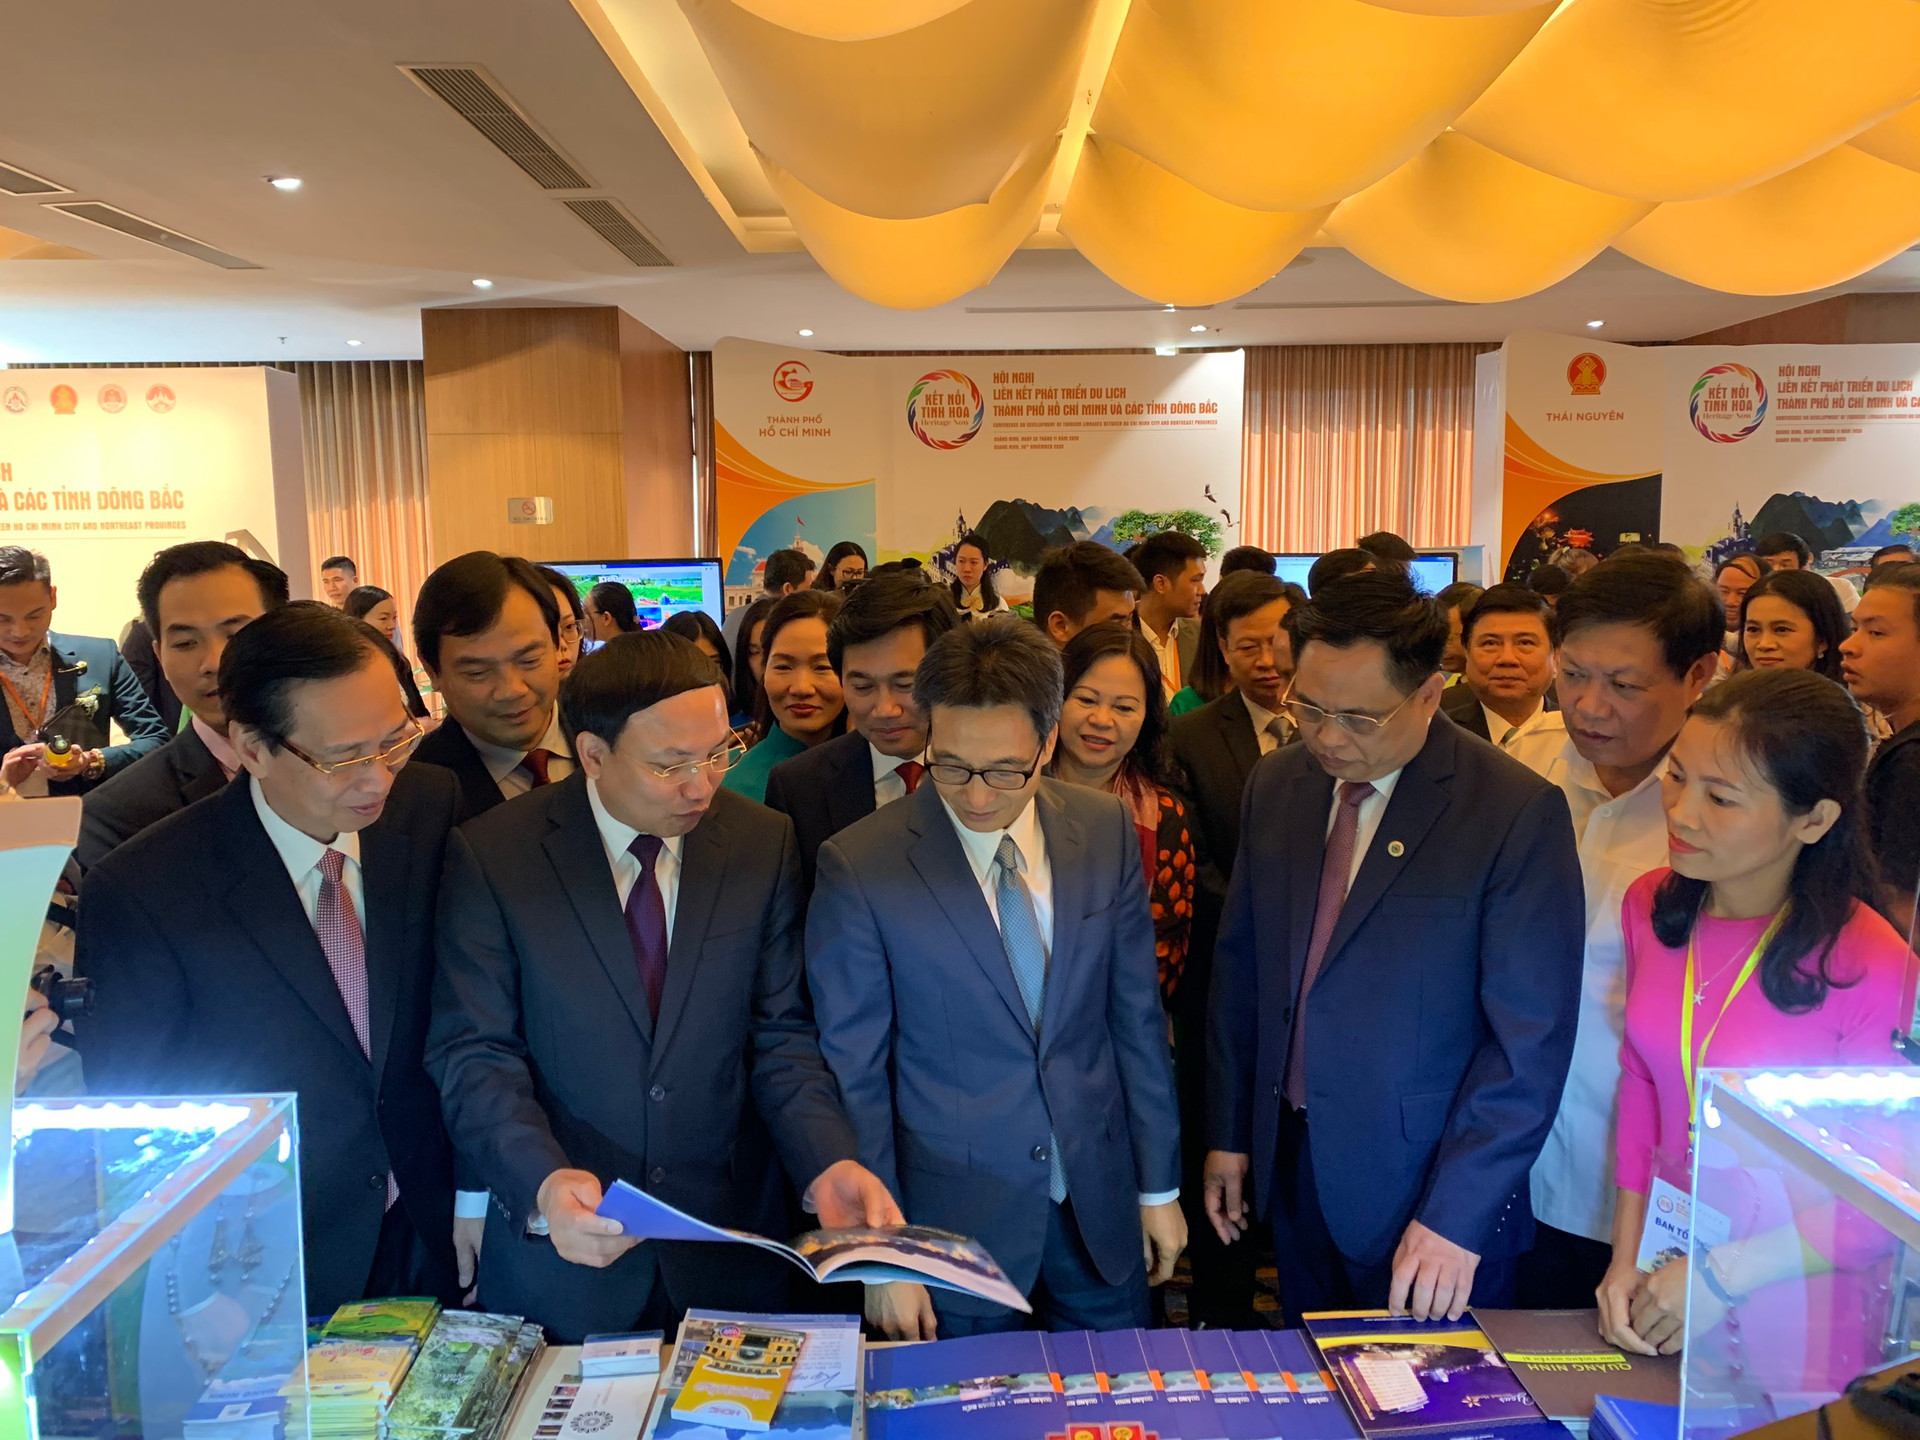 Phó Thủ tướng Vũ Đức Đam cùng các đại biểu tham quan gian hàng của tỉnh Quảng Ninh tại hội nghị.